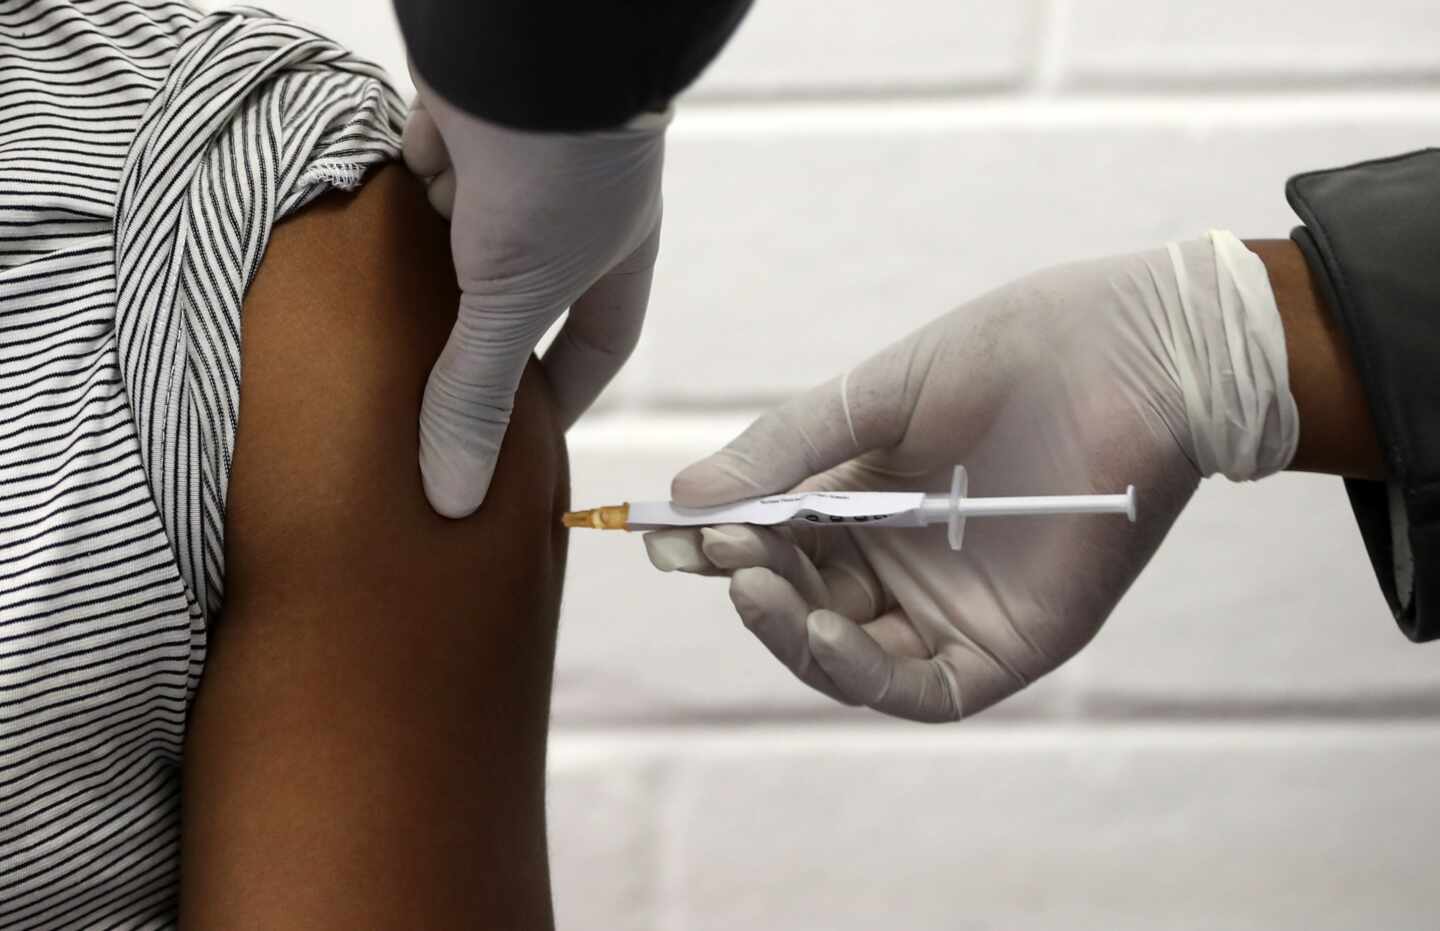 Un prototipo de vacuna contra coronavirus se inyecta a un voluntario.